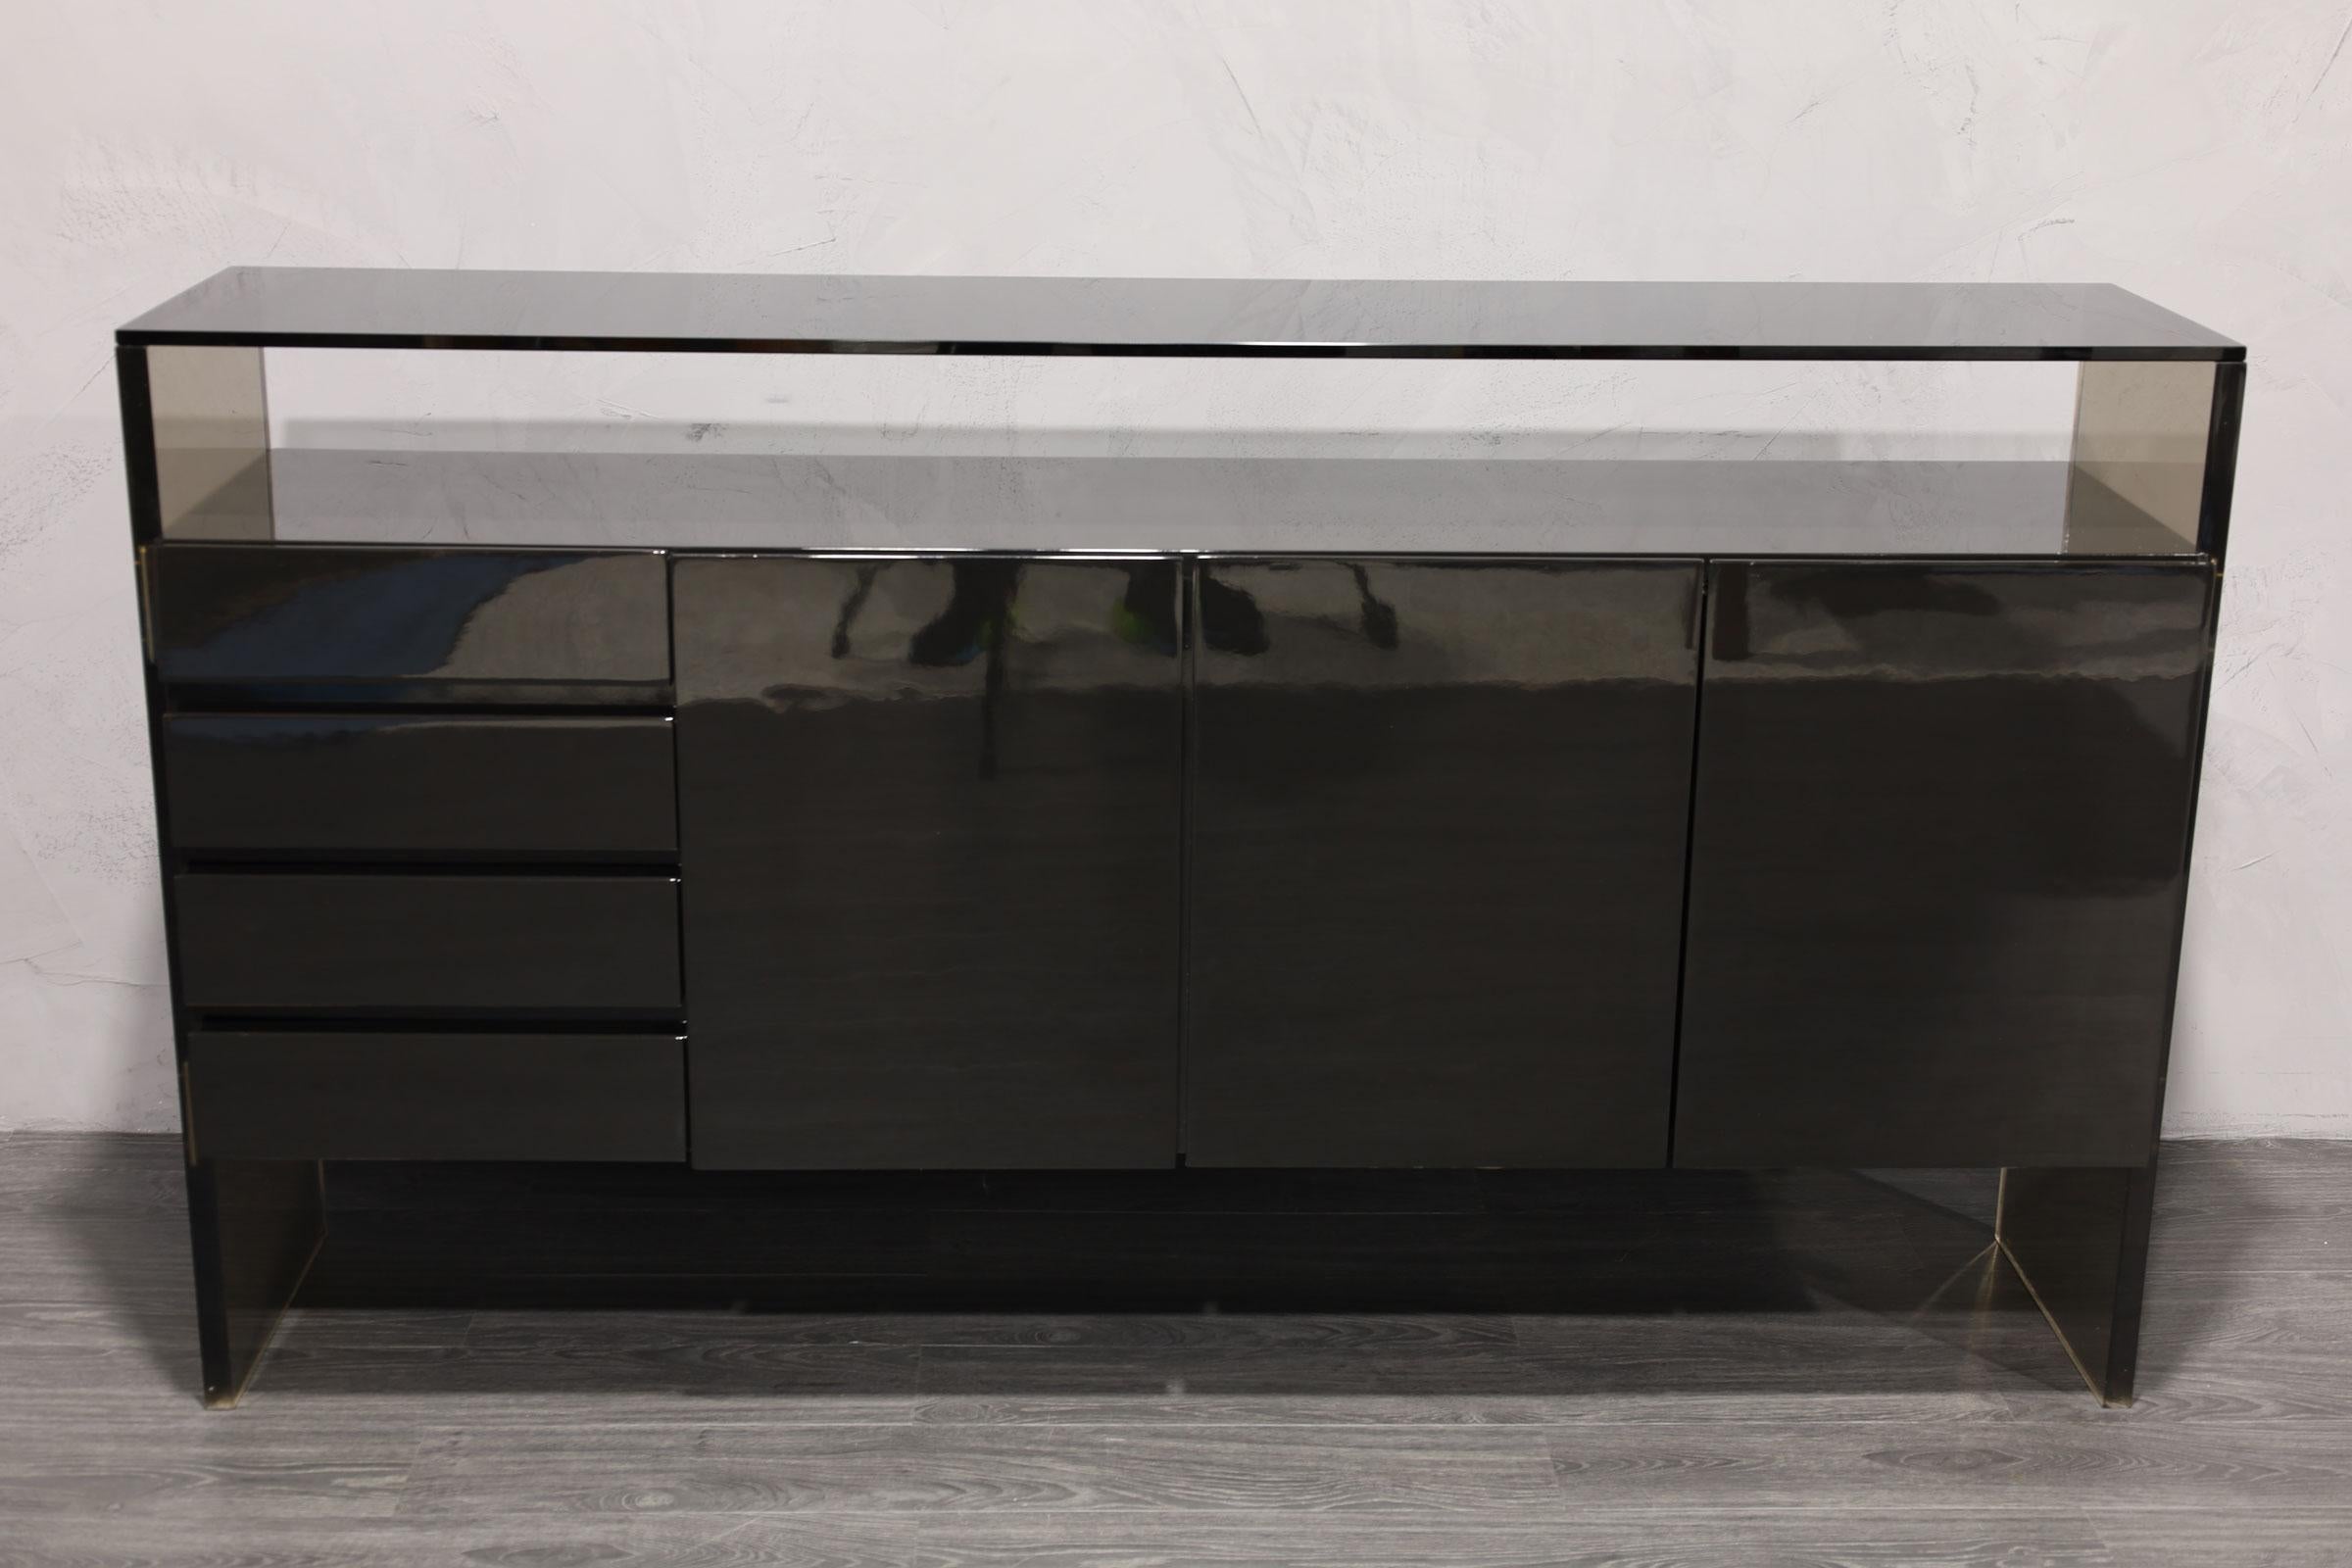 Einer seiner ikonischen Entwürfe, ein restauriertes Sideboard in schwarzem Lack von Milo Baughman. Die Anrichte besteht aus einem schwebenden Korpus mit drei Türen, in denen sich Regale und Besteck befinden. Auf der linken Seite befinden sich vier